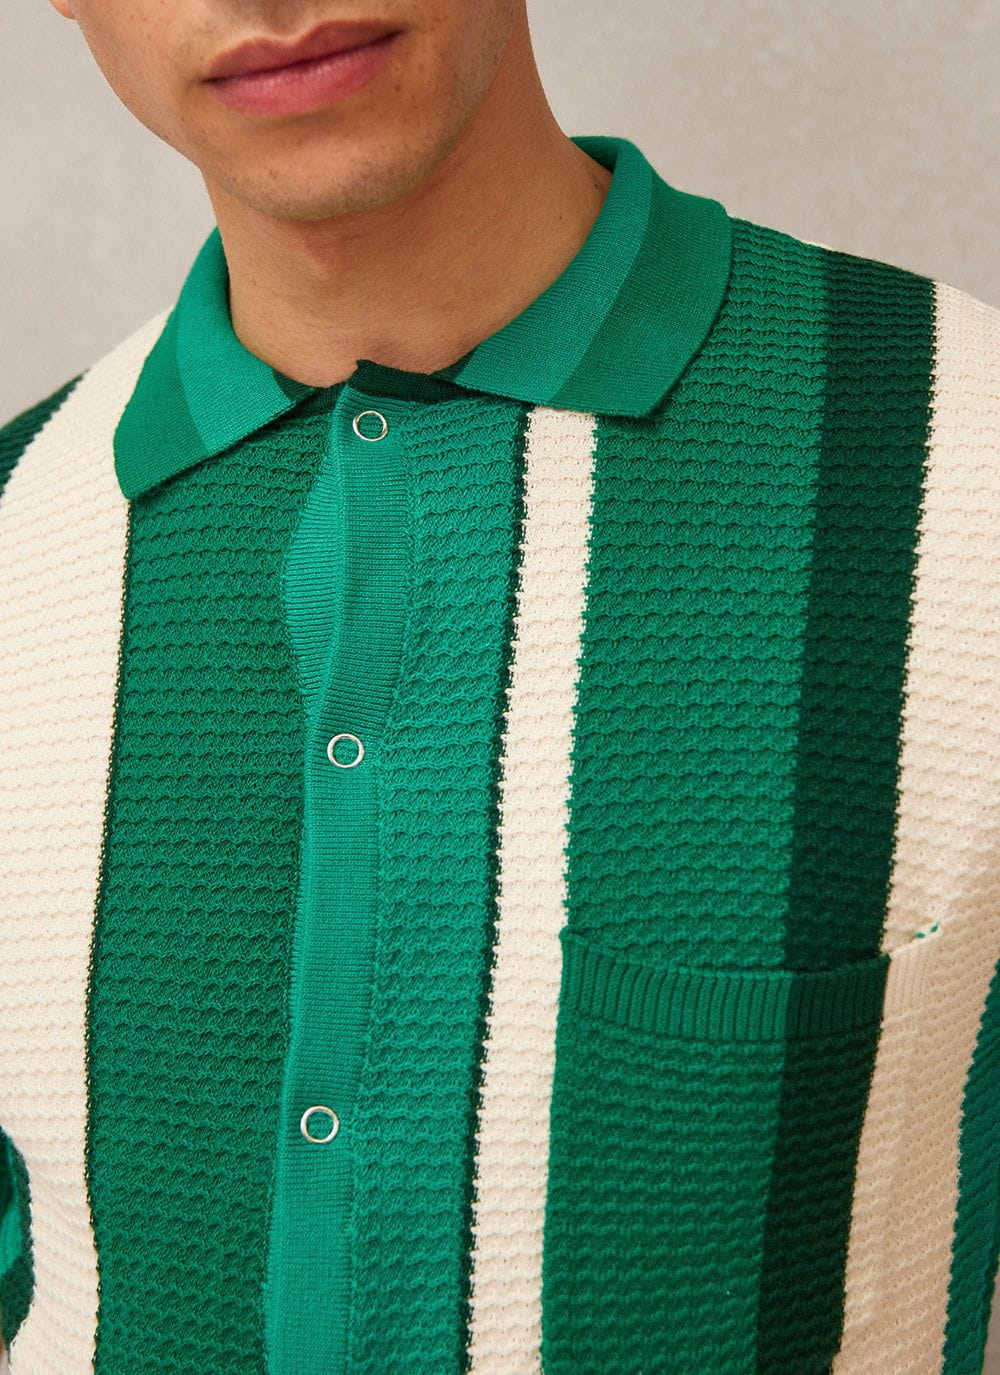 Men's Short Sleeve Knitted Shirt | Adaman Breeze | Forest & Percival ...